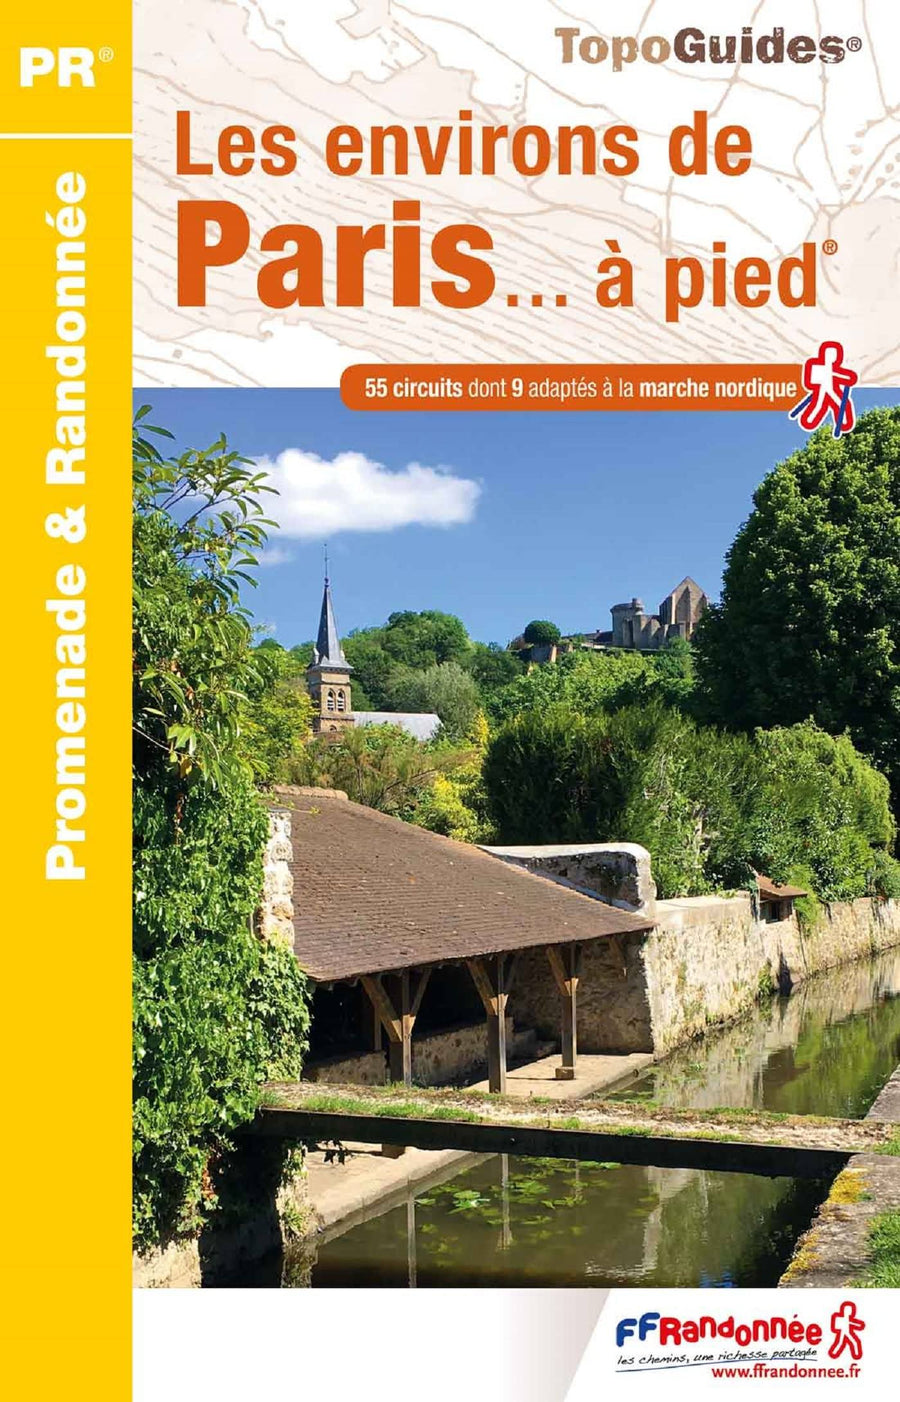 Topoguide de randonnée - Les environs de Paris à pied | FFR guide de conversation FFR - Fédération Française de Randonnée 